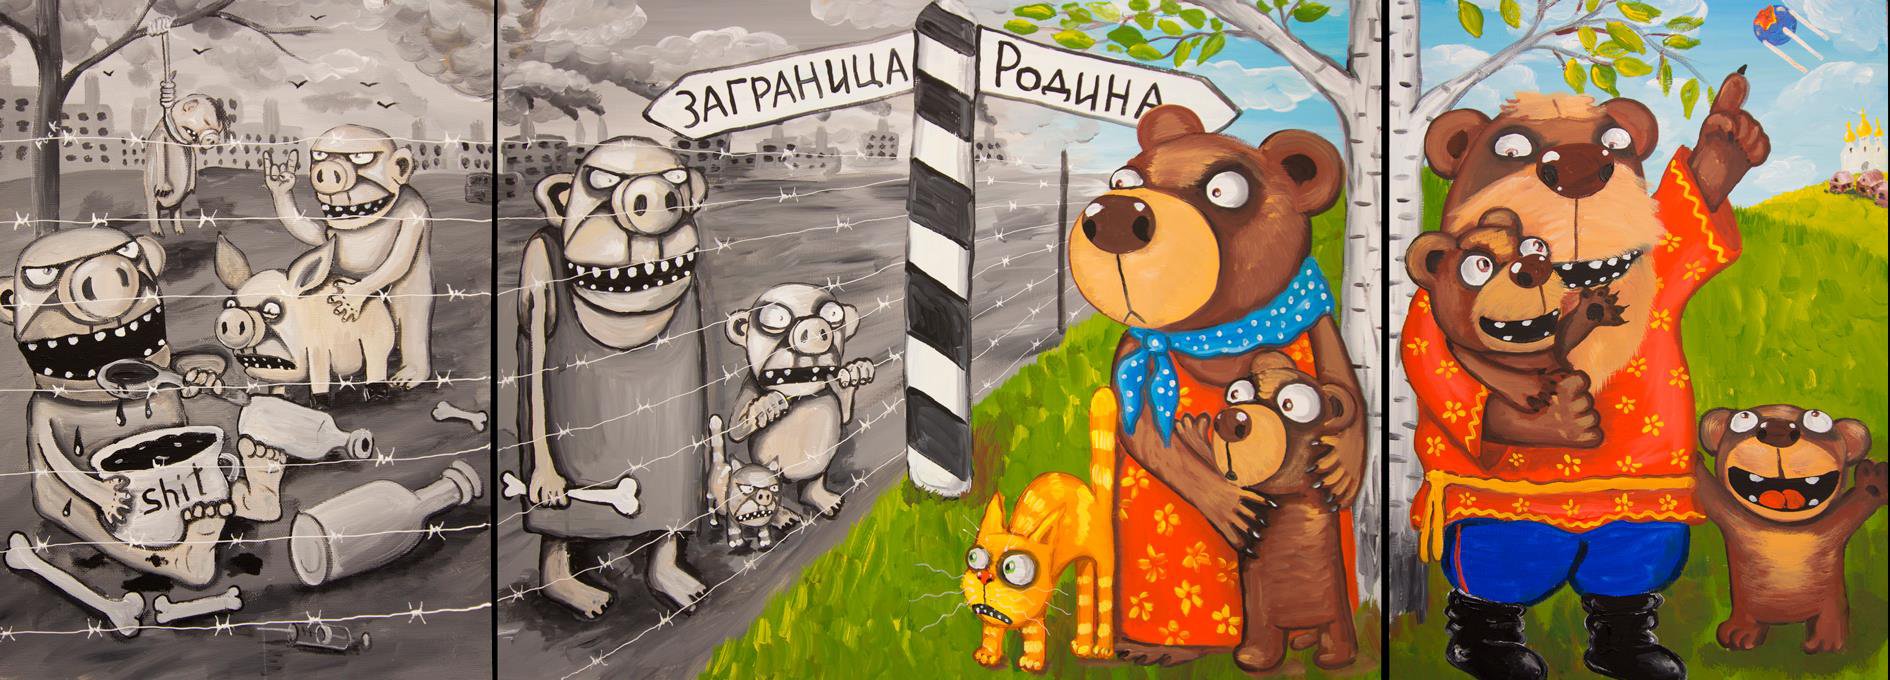 Ілюстративно: картина російського митця Васі Ложкіна, яку свого часу знімали з виставок, наприклад, в Казані